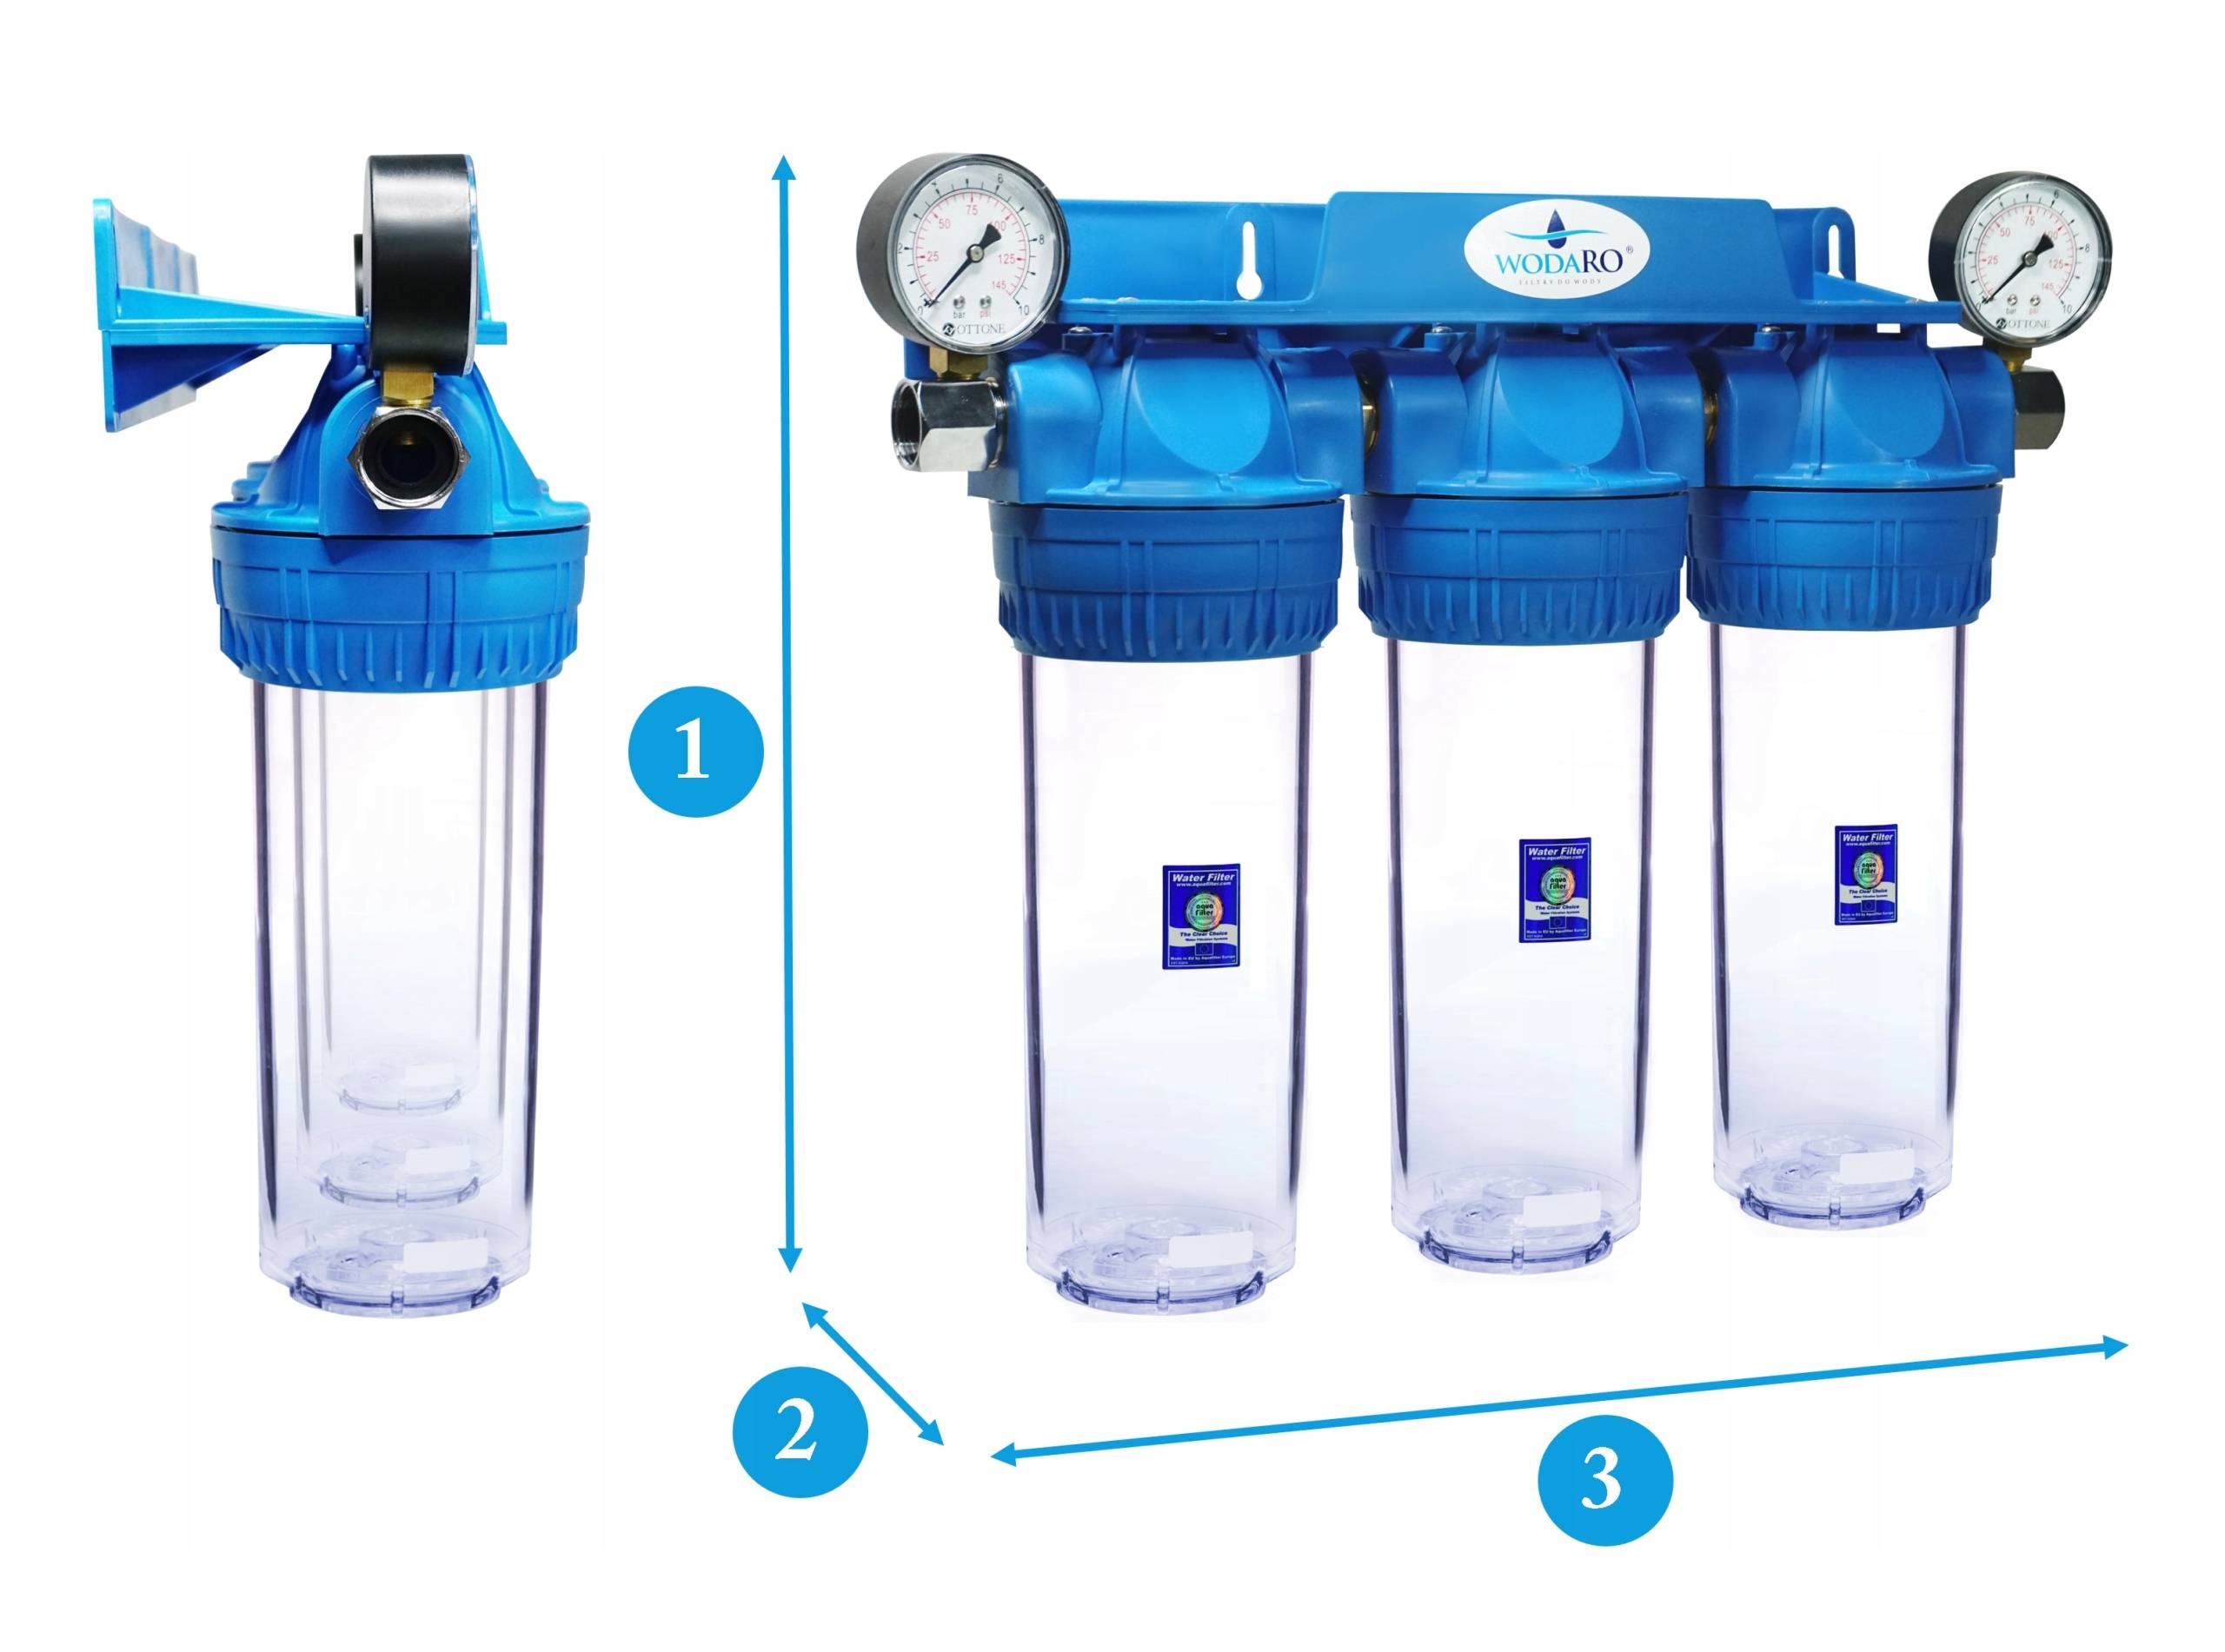 Мембранный фильтр для очистки воды: принцип действия, известные бренды, уход / водопровод / публикации / санитарно-технические работы